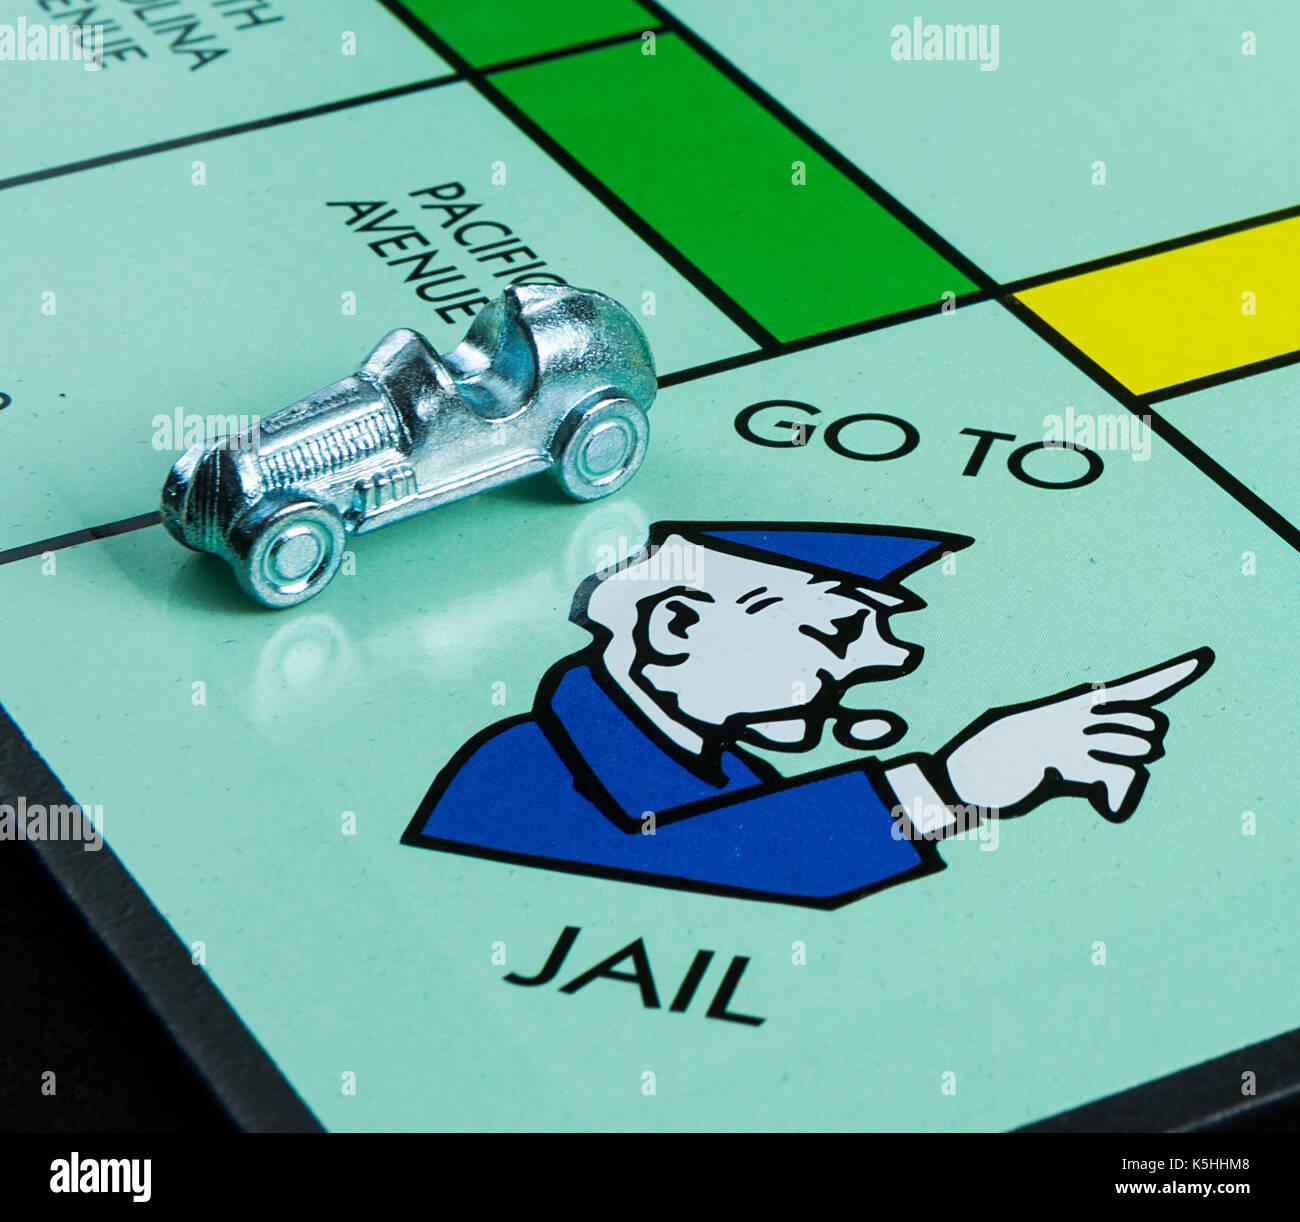 CALDWELL, Idaho/USA - April 25, 2017: ein Liebling der Kindheit Spiel von Hasbro Monopoly zeigen, wo das Auto auf der Stelle ins Gefängnis gelandet. Stockfoto